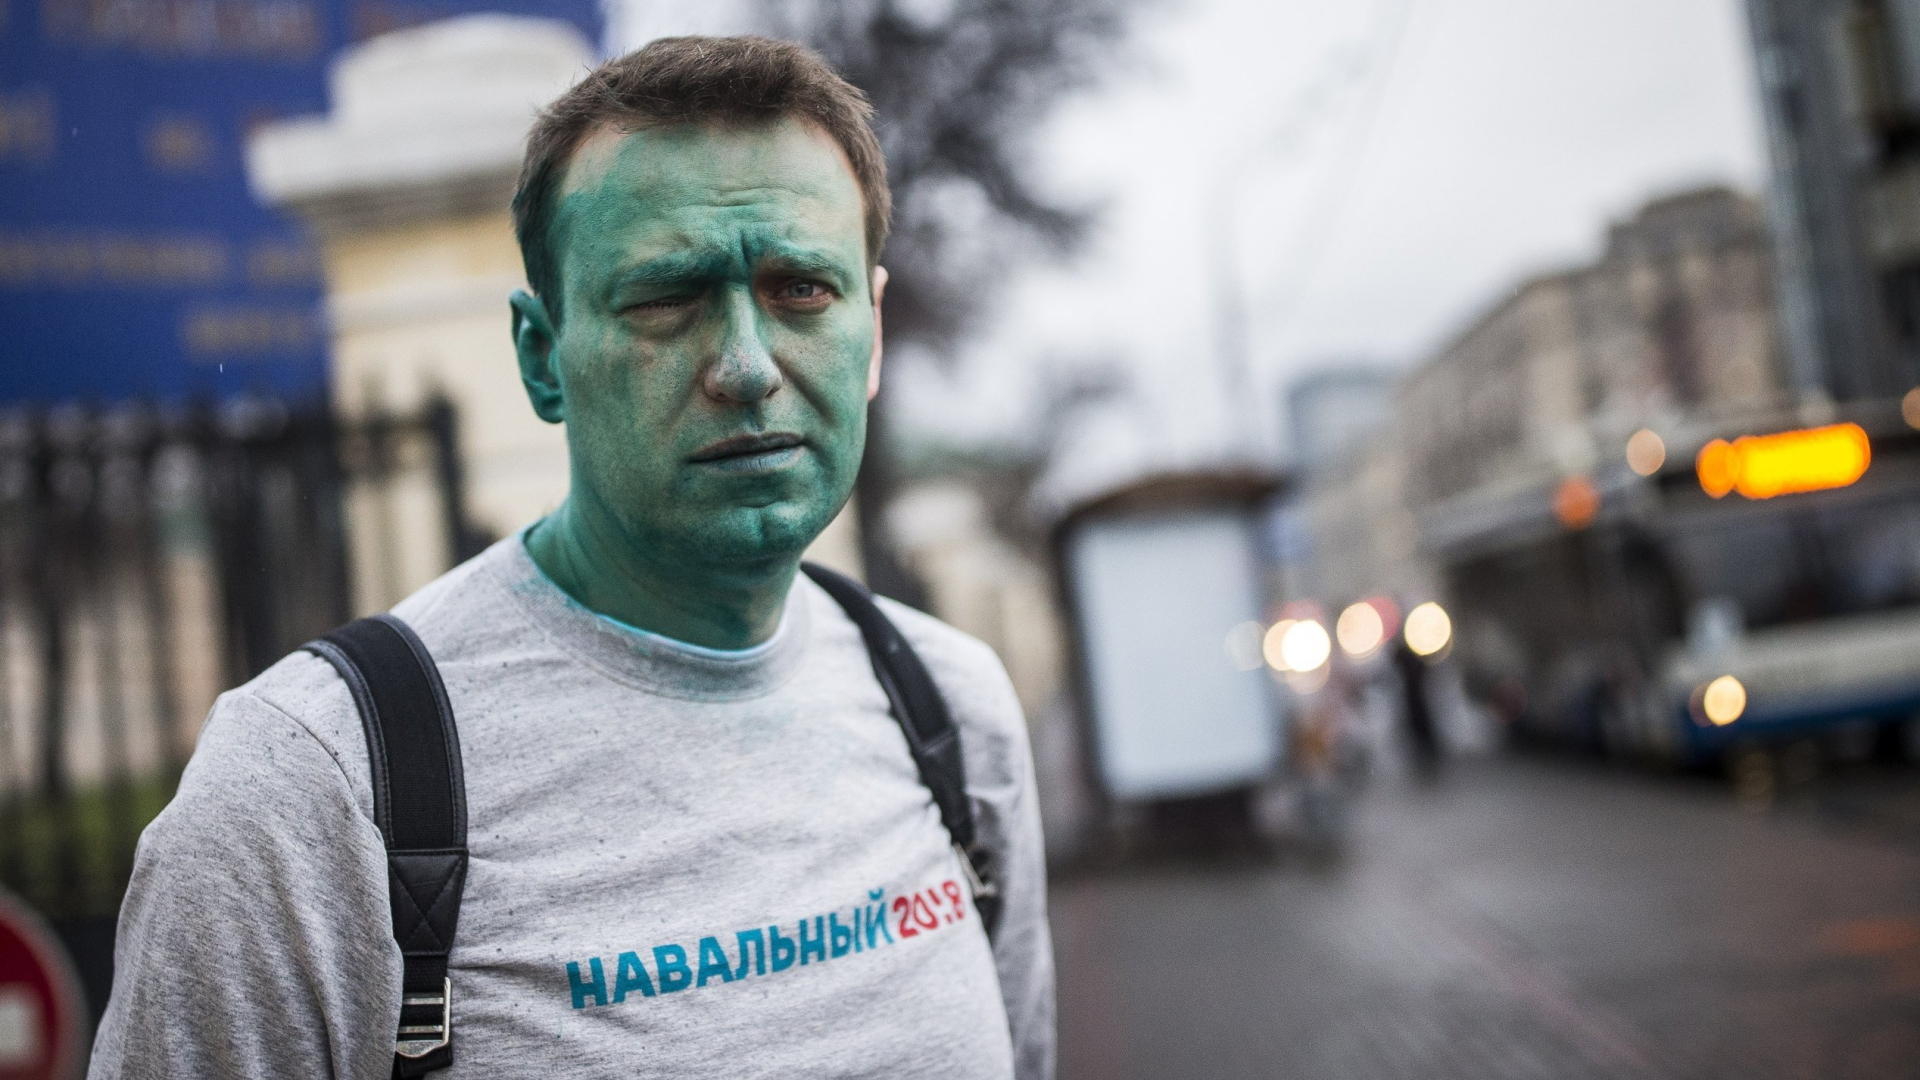 Kreml-Kritiker Alexej Nawalny mit grünem Gesicht nach einer Farbattacke Ende April | dpa